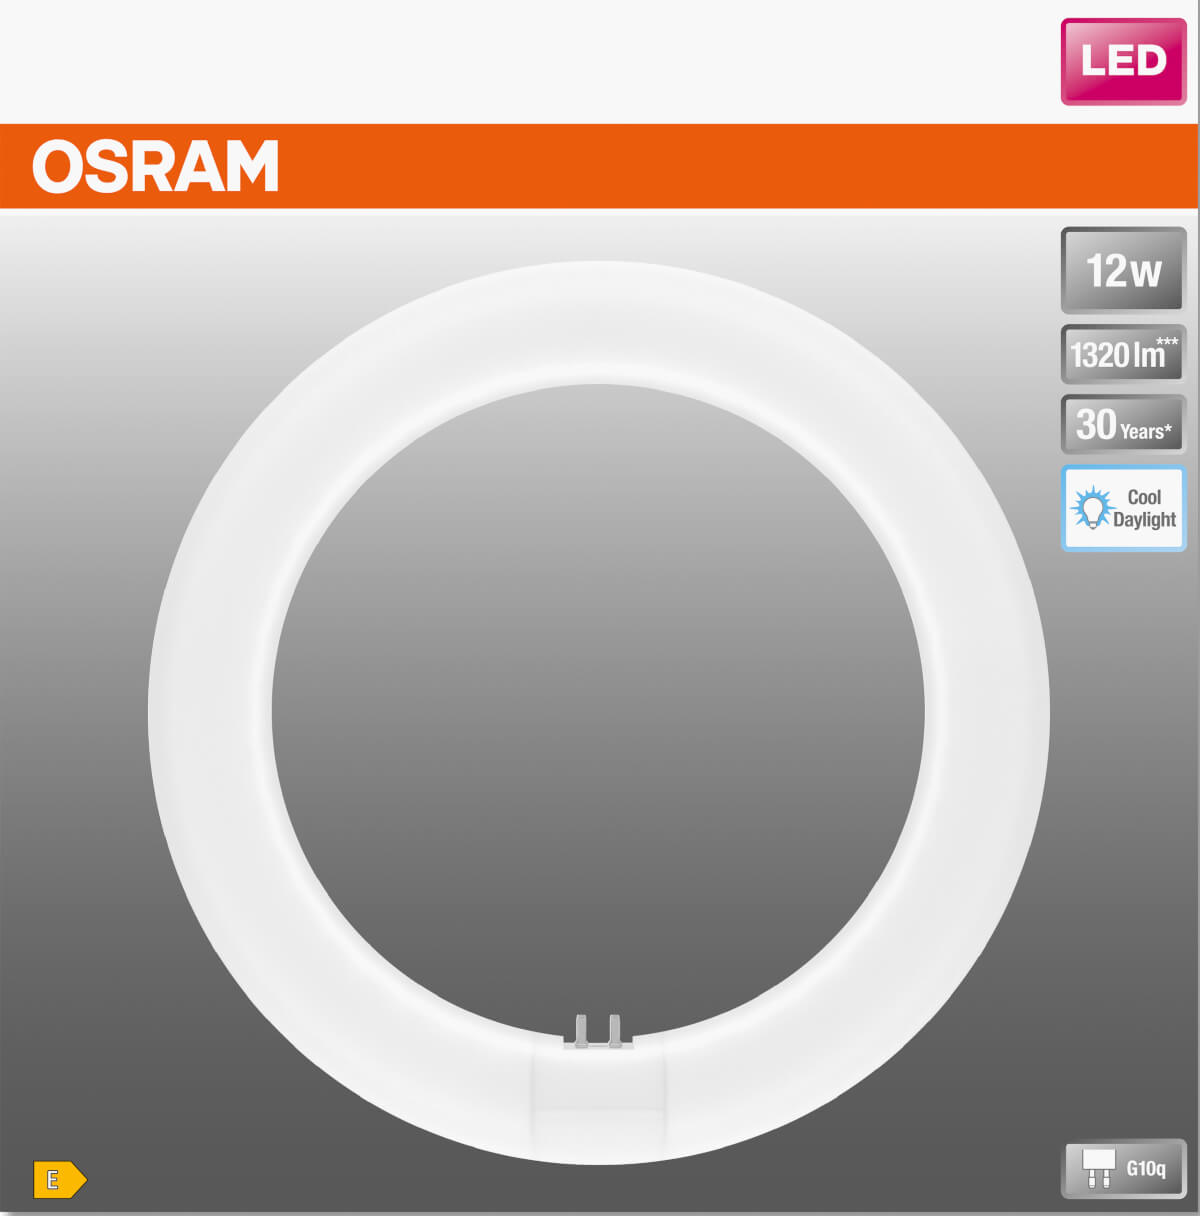 Osram zamiennik LED 12W świetlówki 22W T9 G10q 